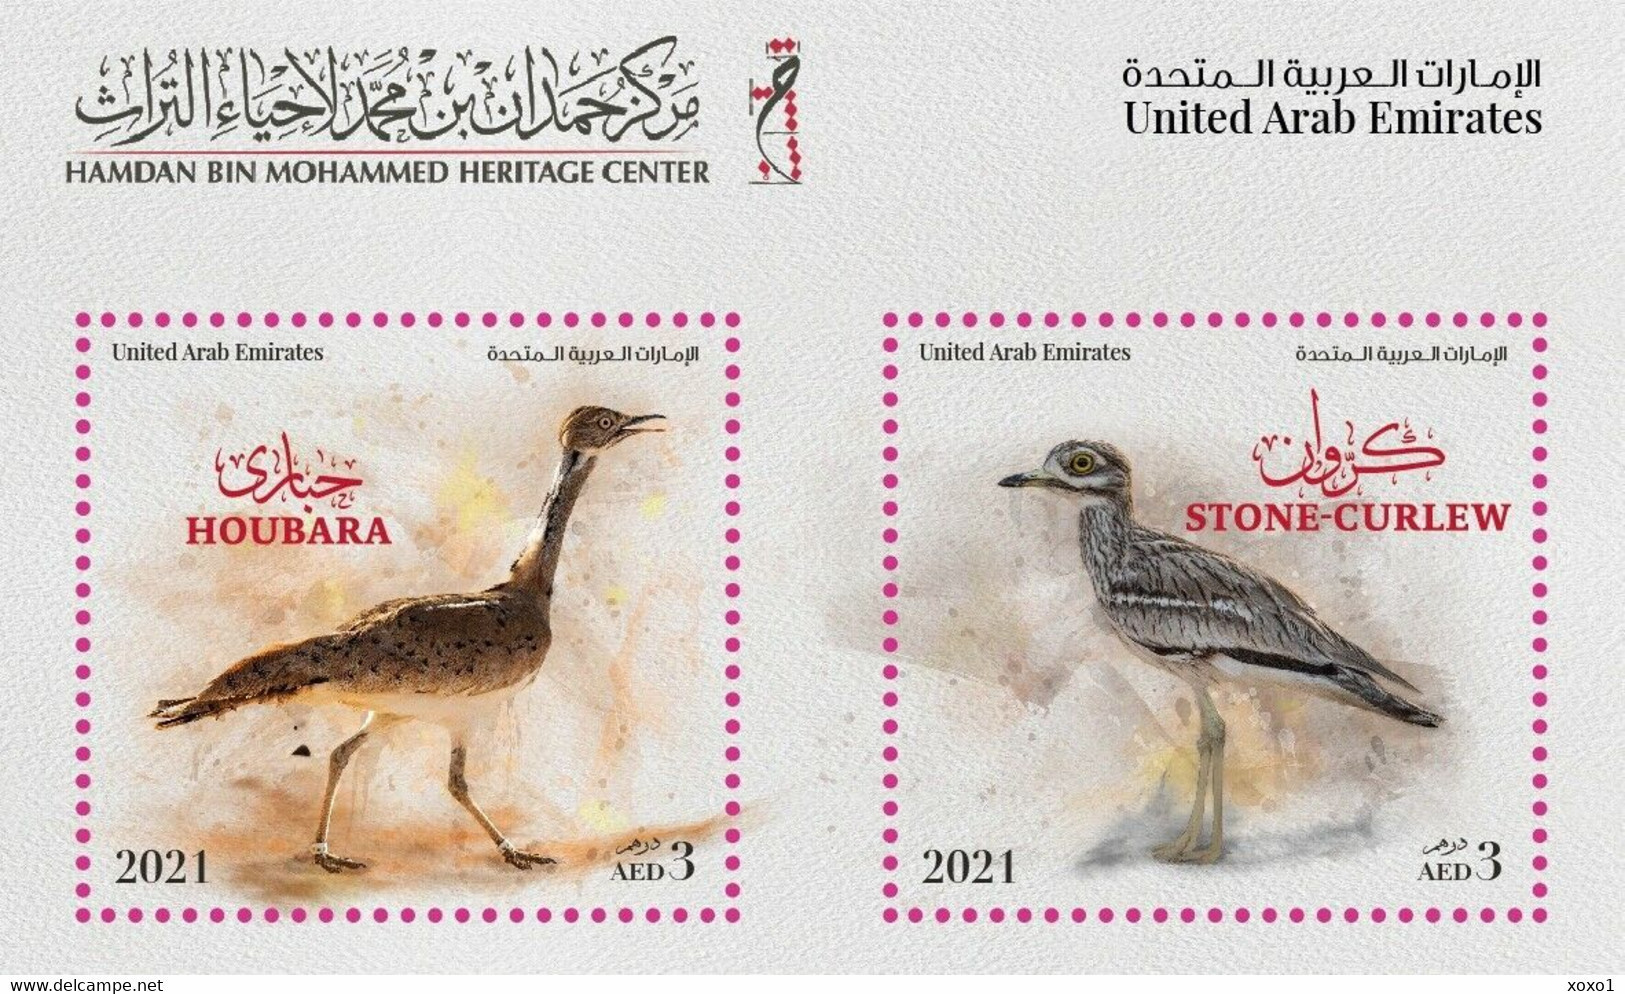 UAE 2021 MiNr. 1312 - 1313 (Block 112) Vereinigte Arabische Emirate Birds S\sh MNH**  6,00 € - United Arab Emirates (General)